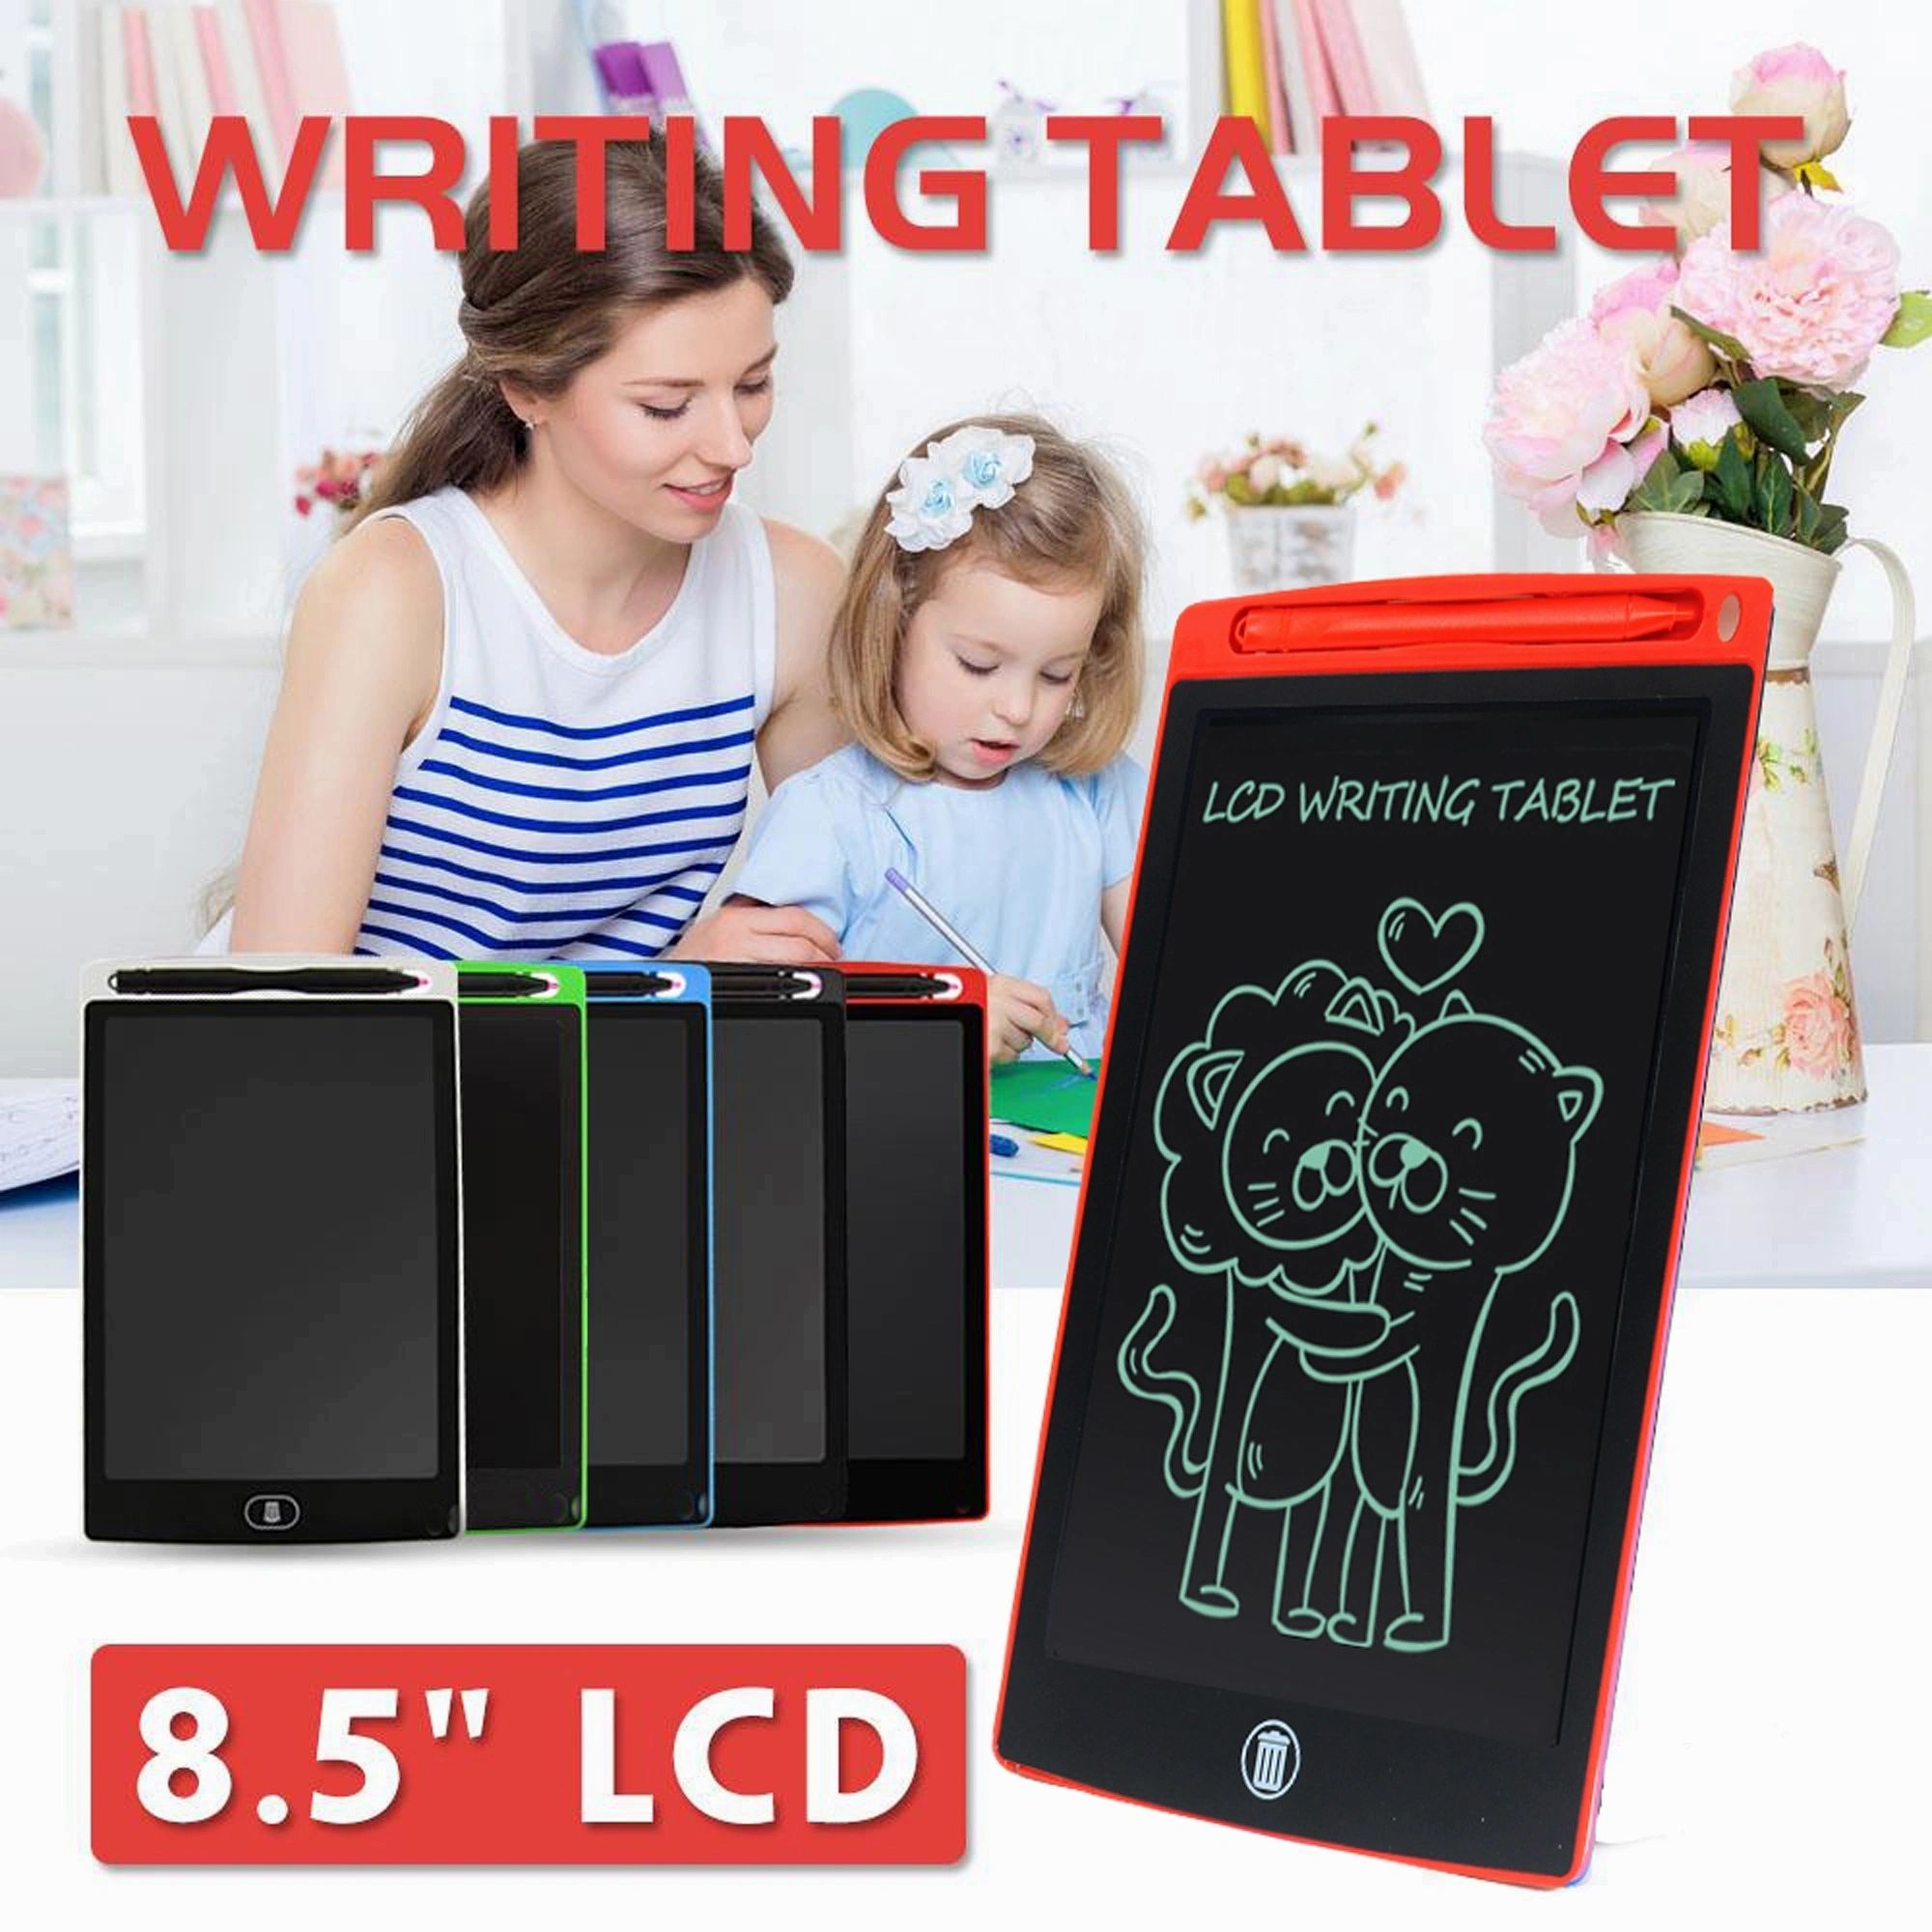 8.5นิ้ว LCD แท็บเล็ตสำหรับเขียนการศึกษา Board ภาพวาดดิจิตอลแบบพกพาแผ่นรองเขียนสำหรับเด็กและโน้ตบุ๊คผู้หญิงสำหรับเด็ก